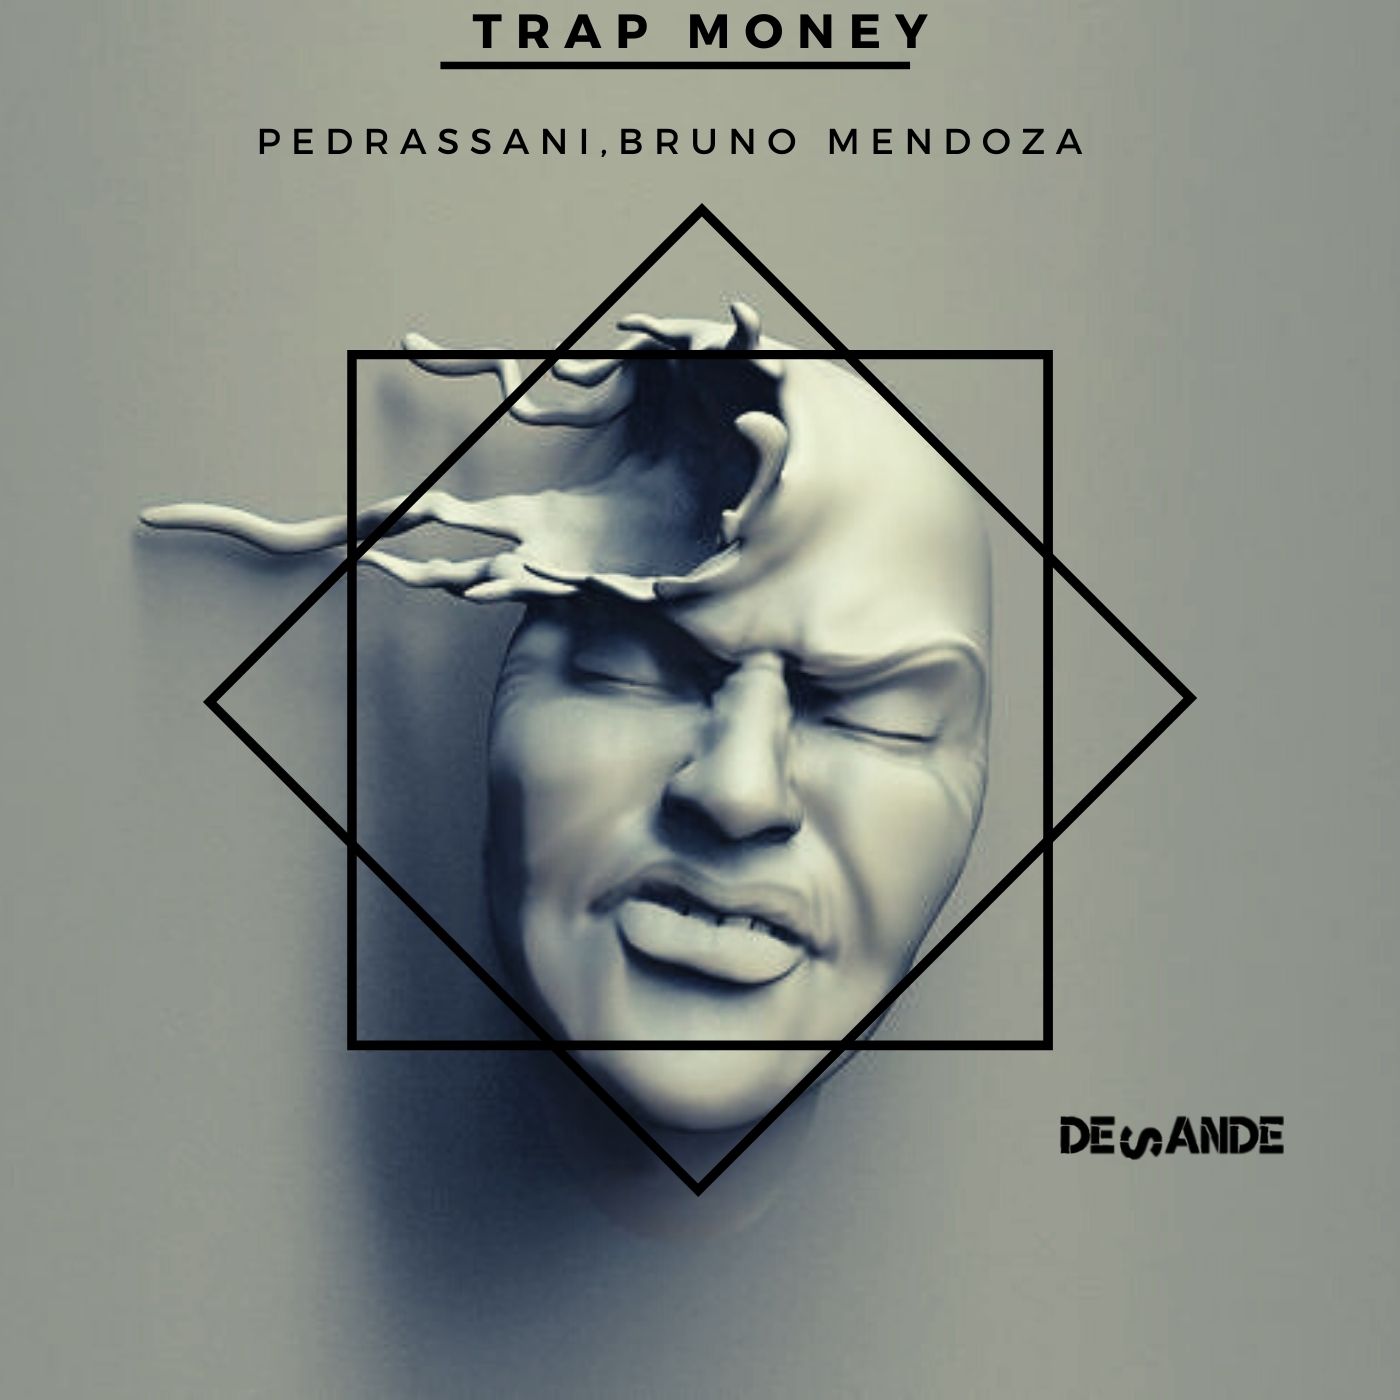 Trap Money - Pedrassani, Bruno Mendoza - Original Mix 